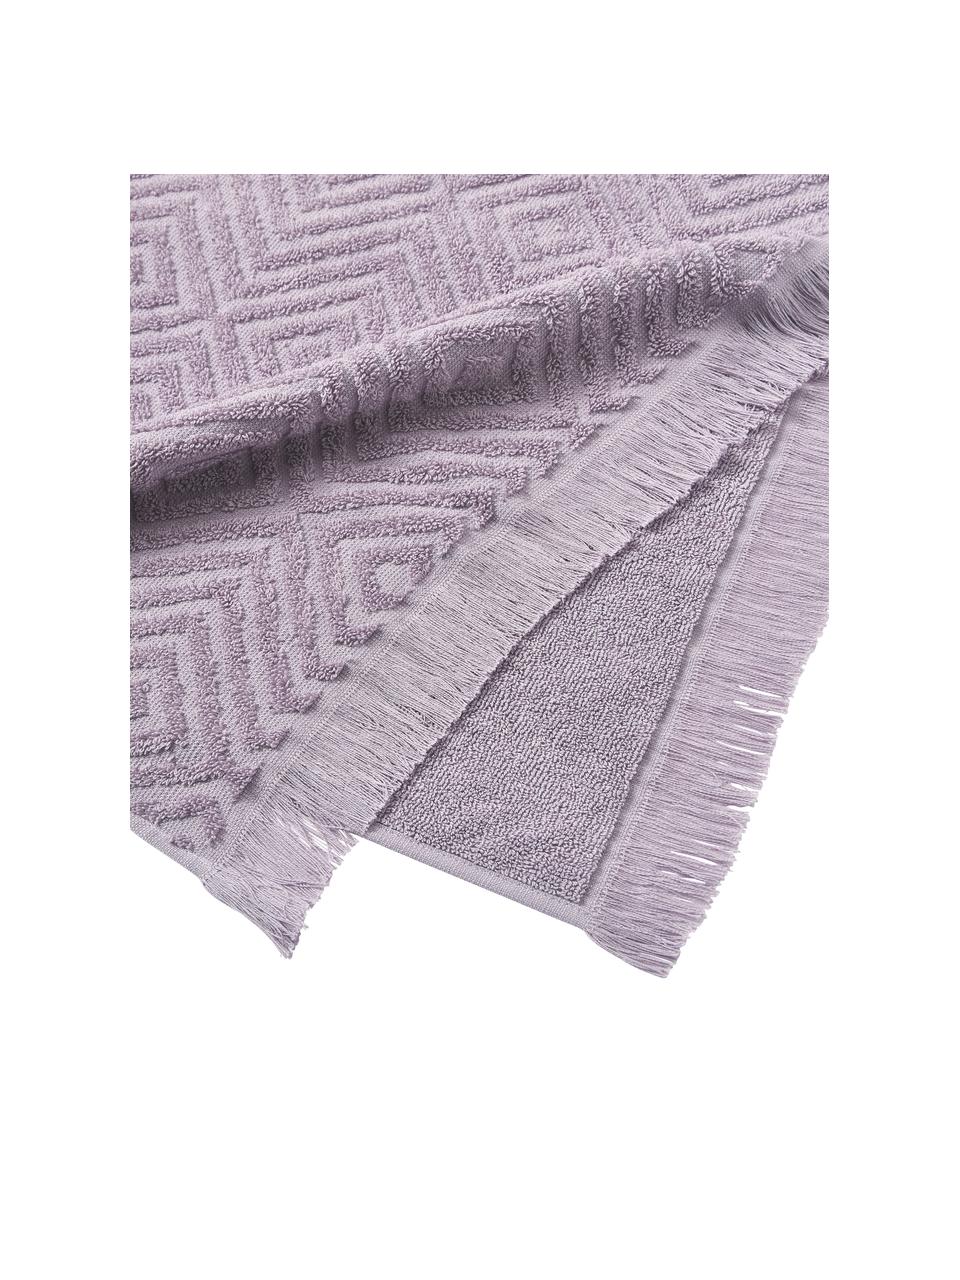 Handdoekenset Jacqui, 3-delig, Lavendel, Set met verschillende formaten